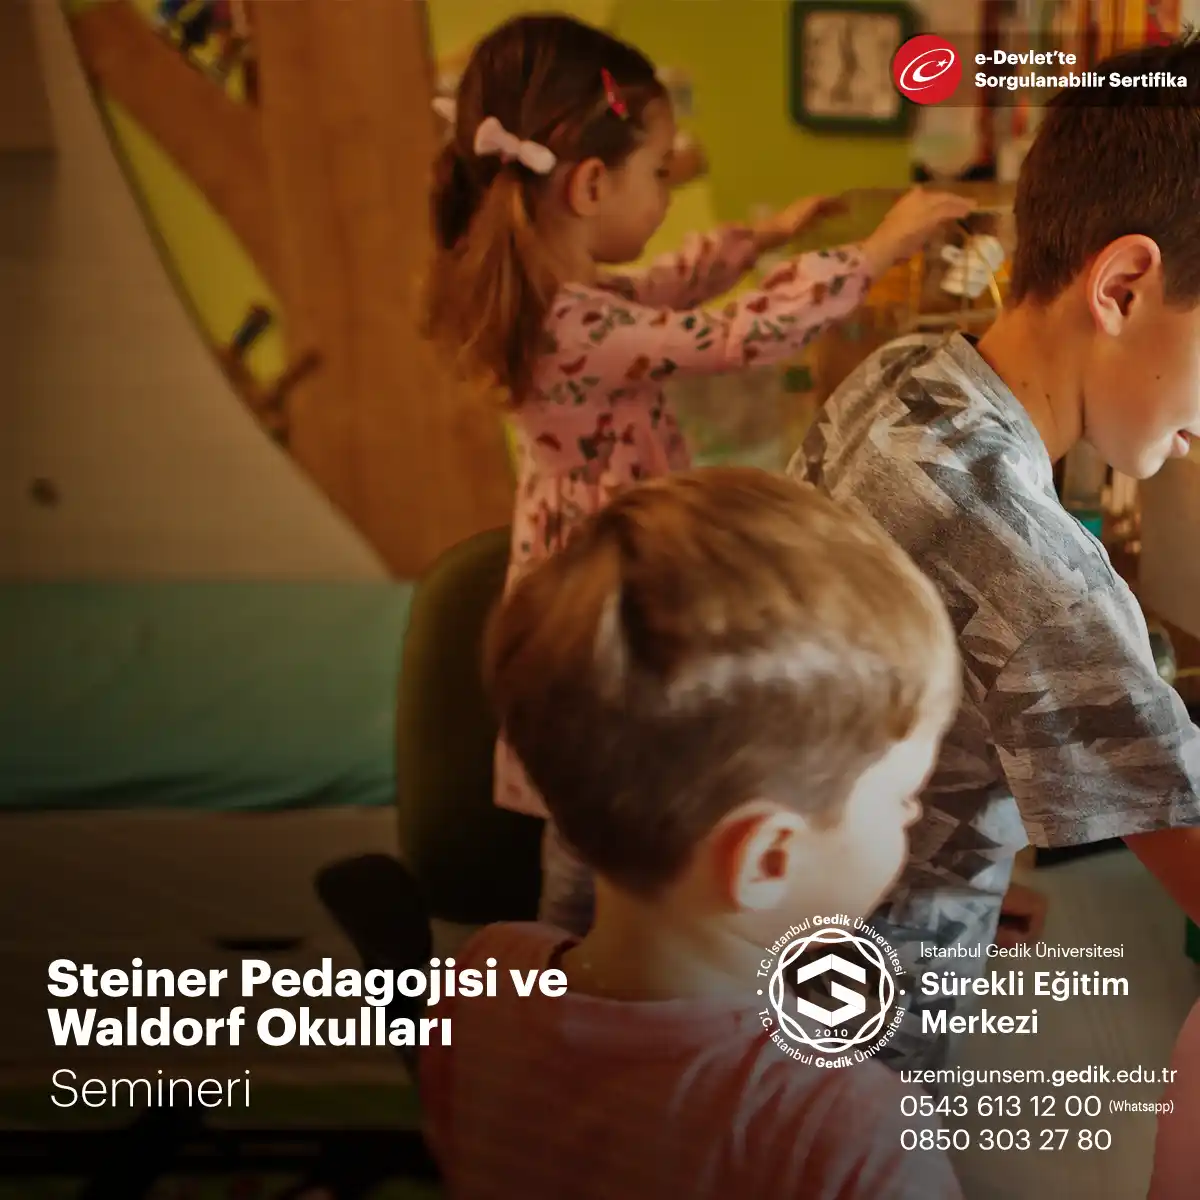 Steiner Pedagojisi, Avusturyalı filozof, eğitimci ve yazar Rudolf Steiner tarafından geliştirilmiş bir pedagojik yaklaşımdır.